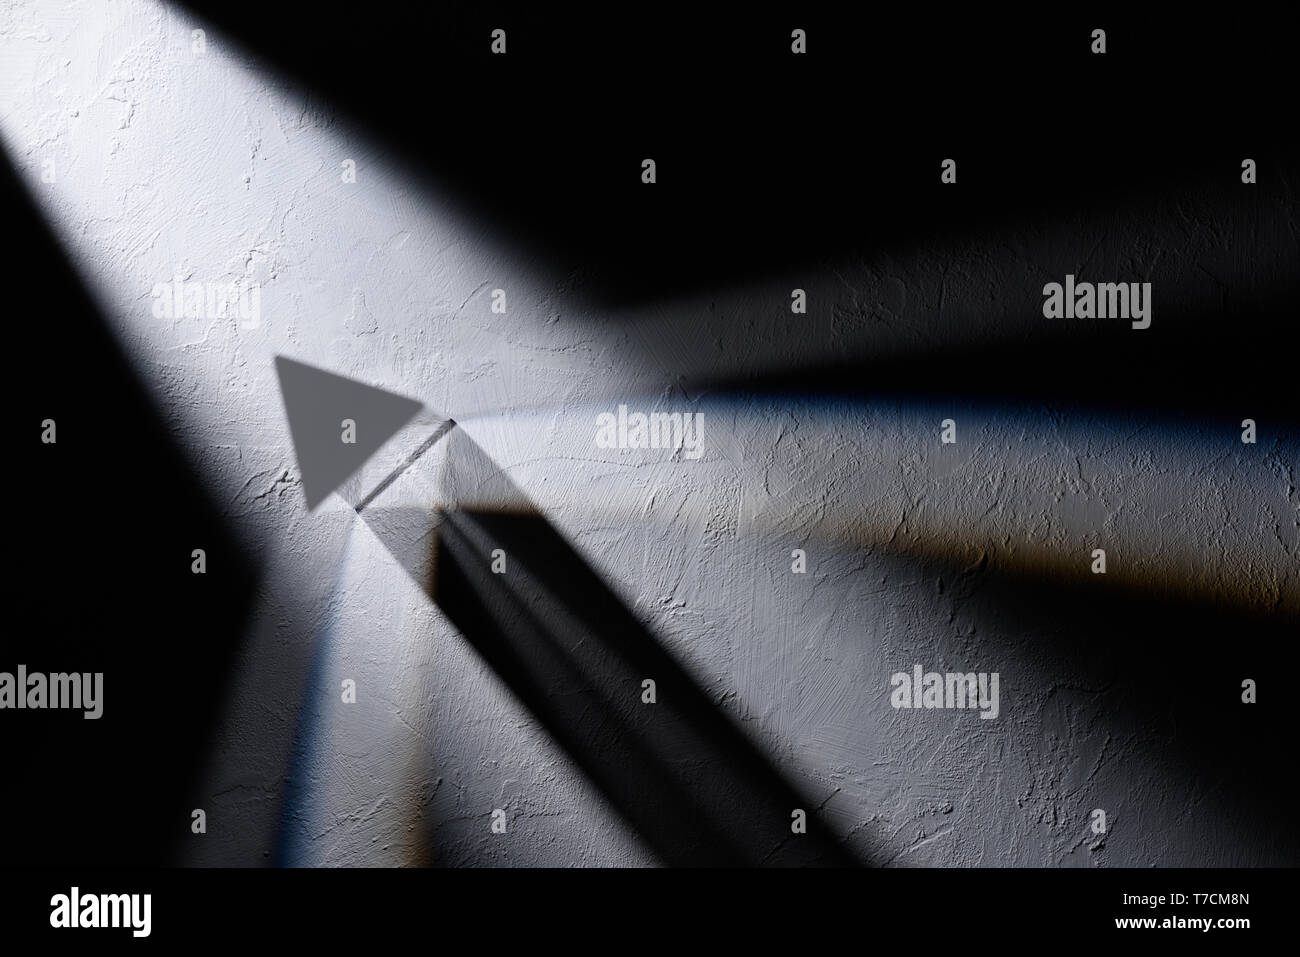 Prisma ottico immagini e fotografie stock ad alta risoluzione - Alamy